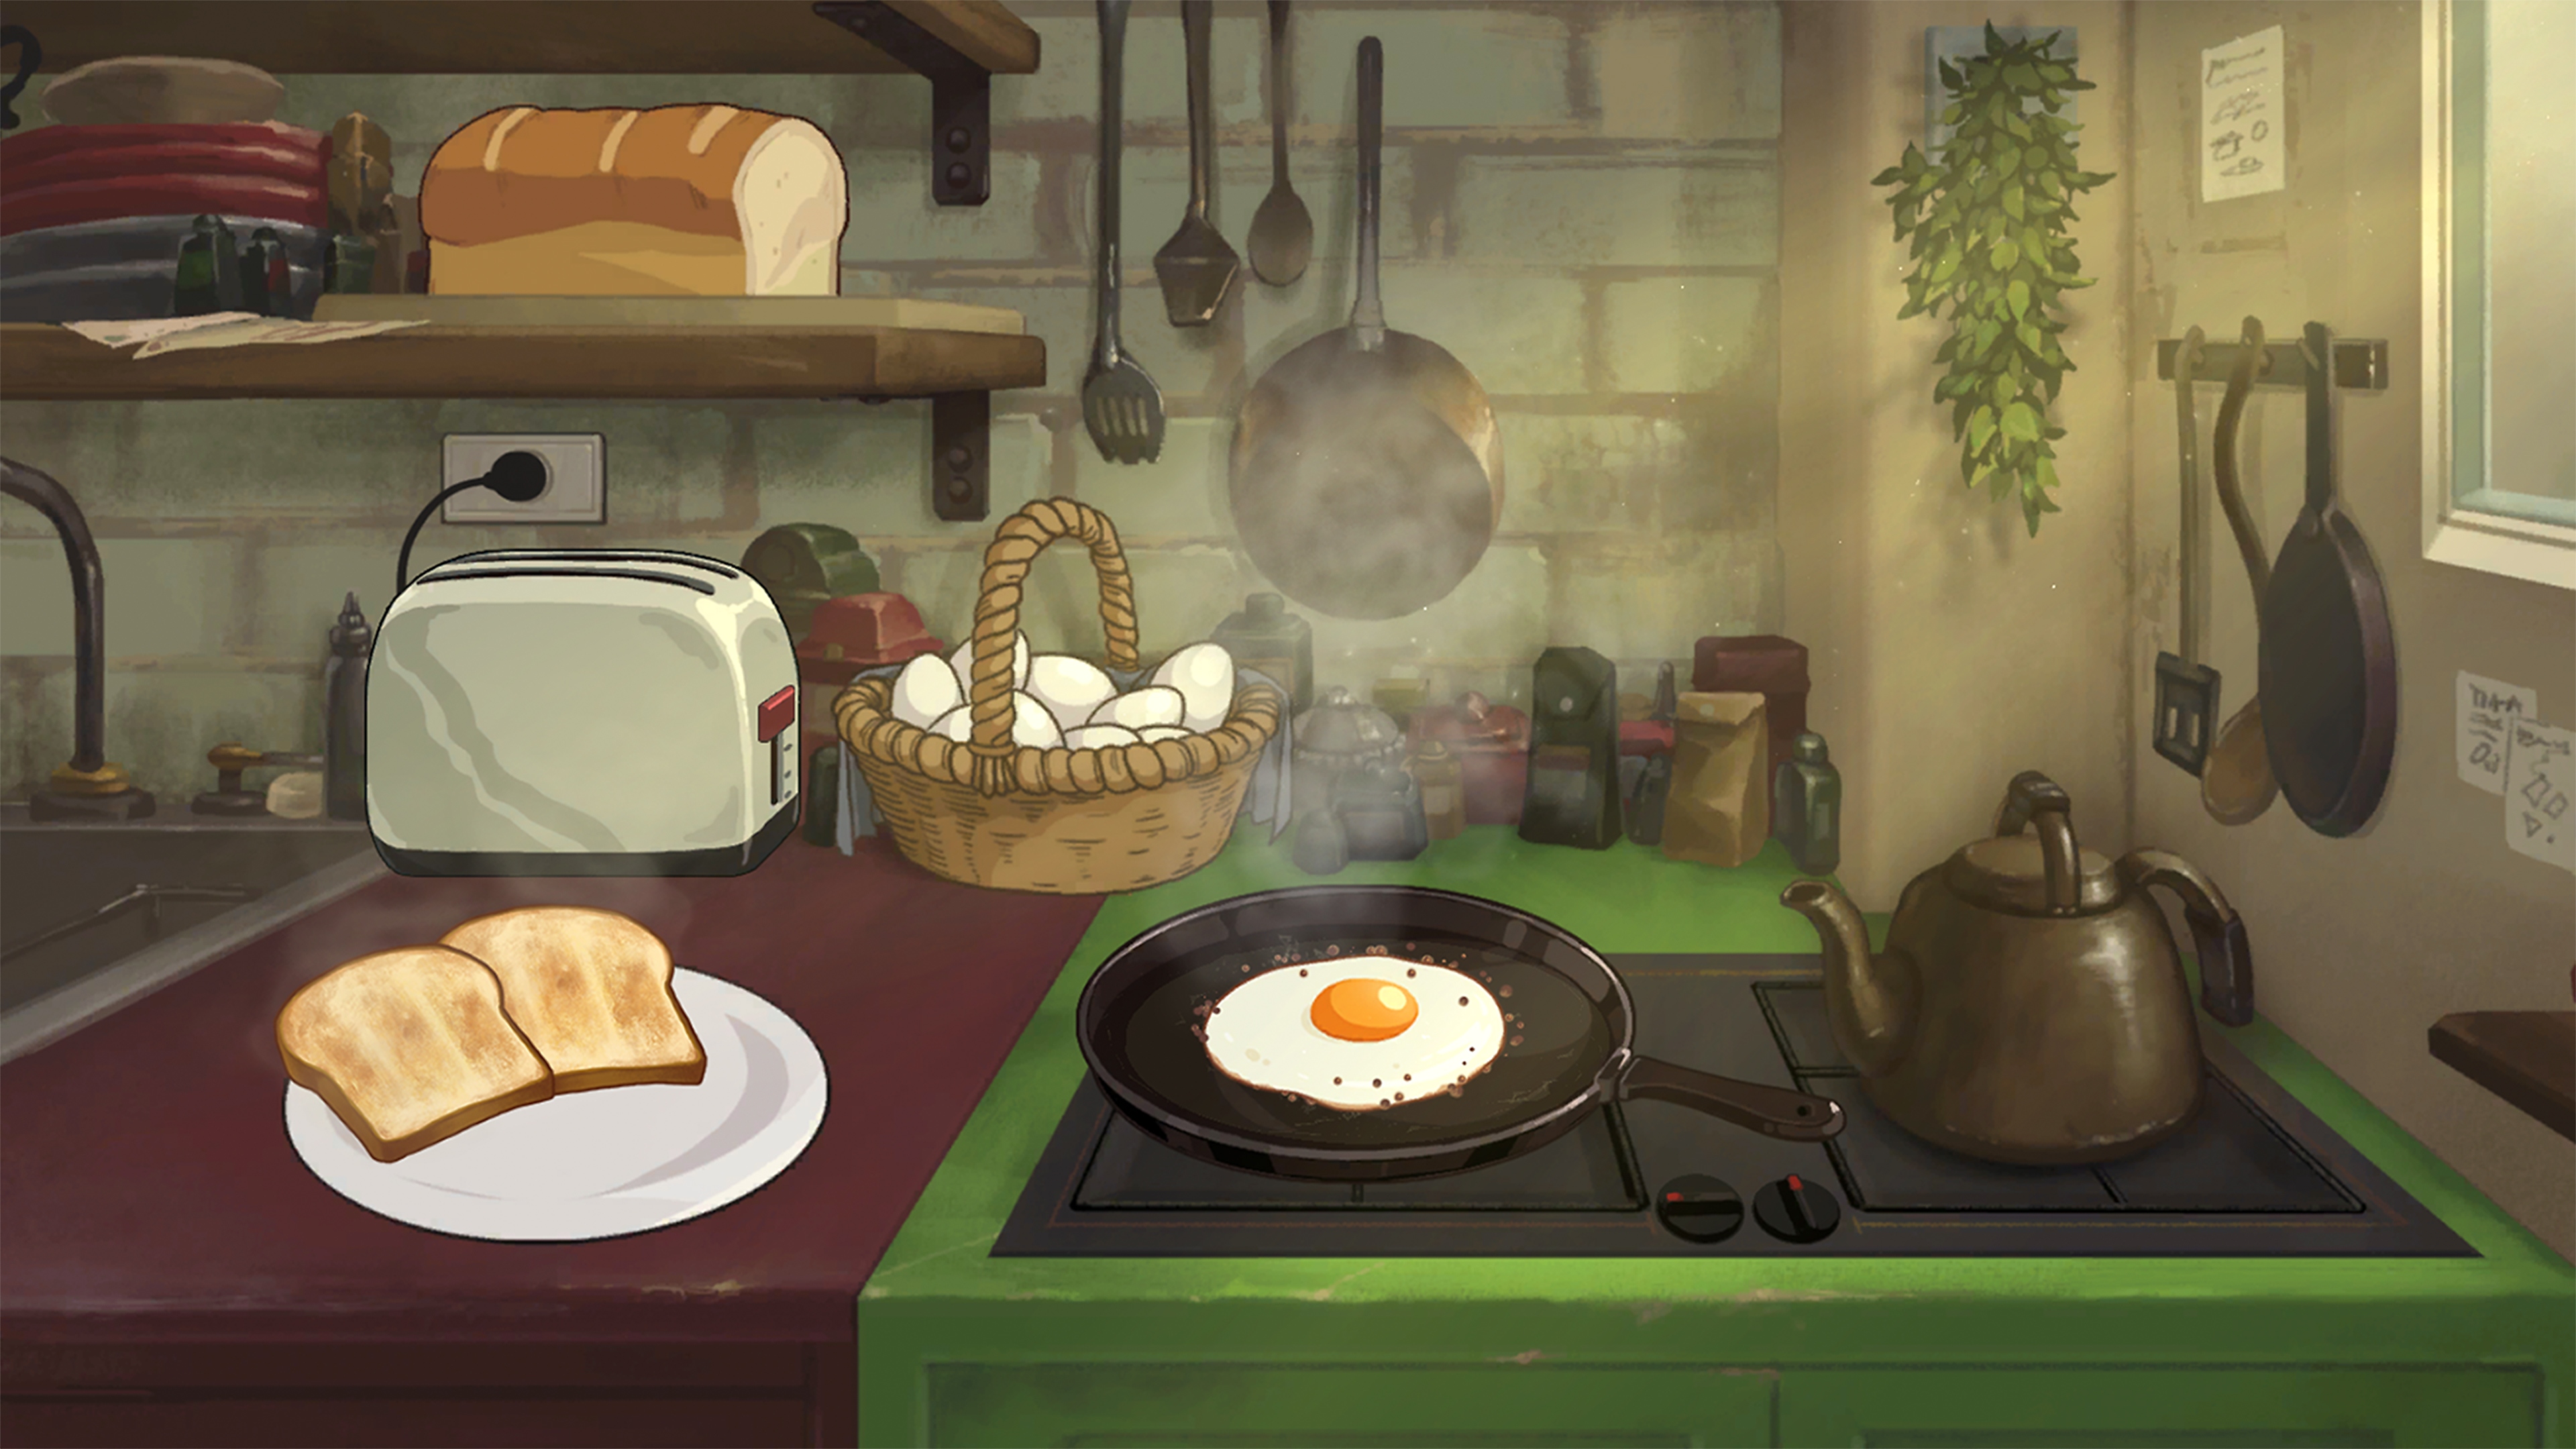 Behind the Frame: Captura de pantalla de El paisaje más bello mostrando un desayuno siendo preparado en el fuego de una cocina